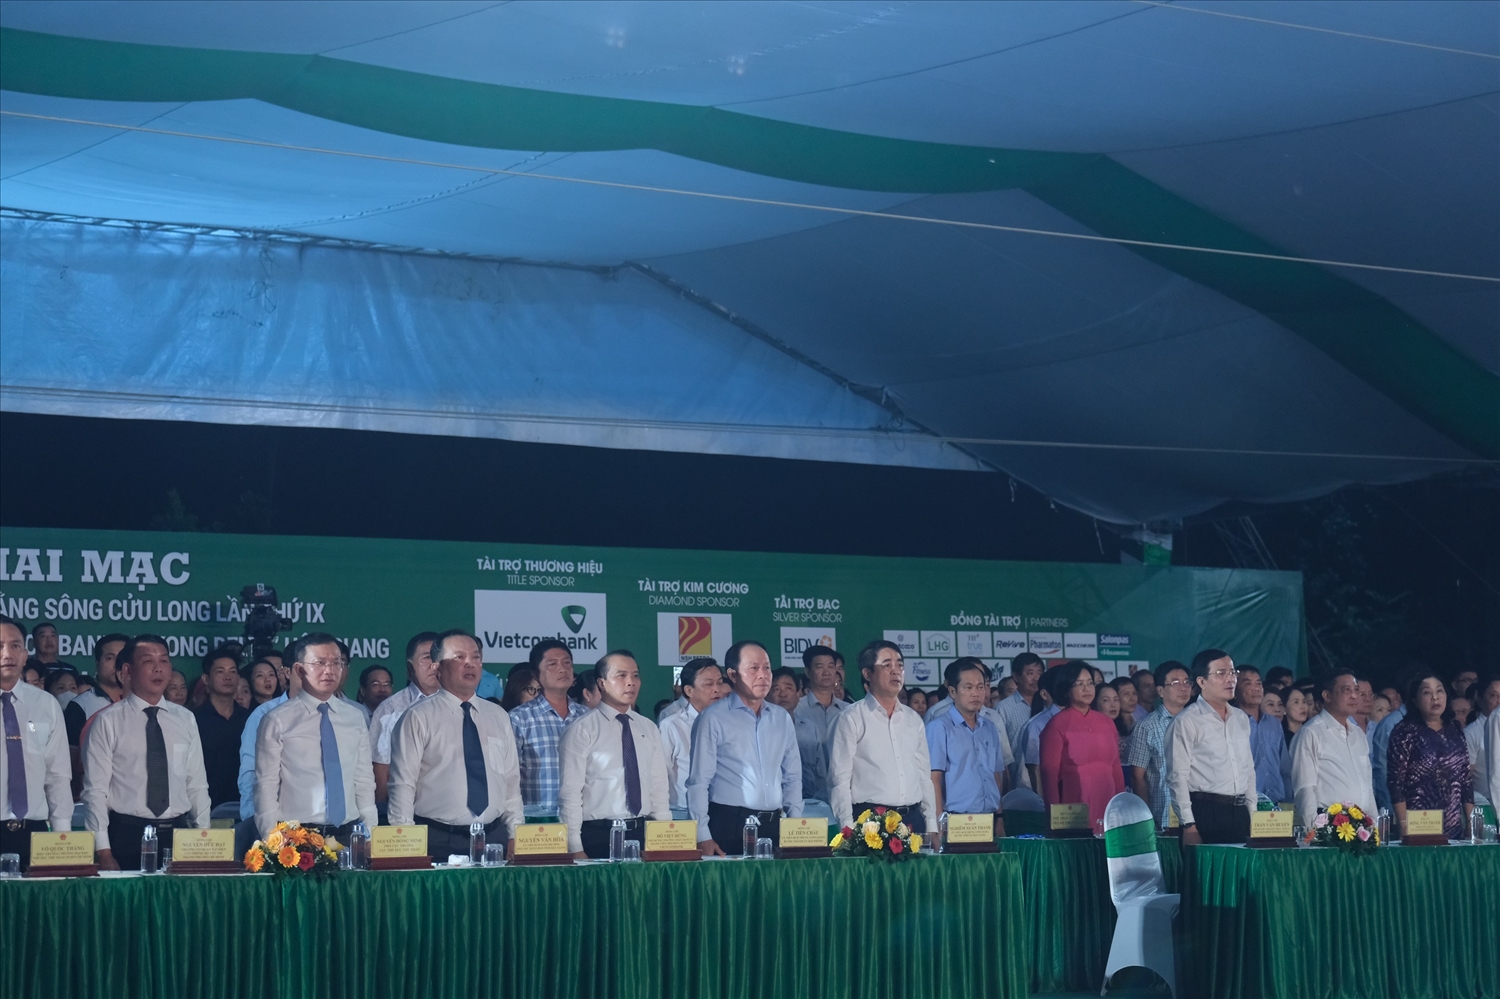 Các đại biểu tham dự Lễ khai mạc Đại hội Thể thao Đồng bằng sông Cửu Long lần thứ IX và Giải Marathon quốc tế “Vietcombank Mekong Delta” Hậu Giang lần thứ IV năm 2023